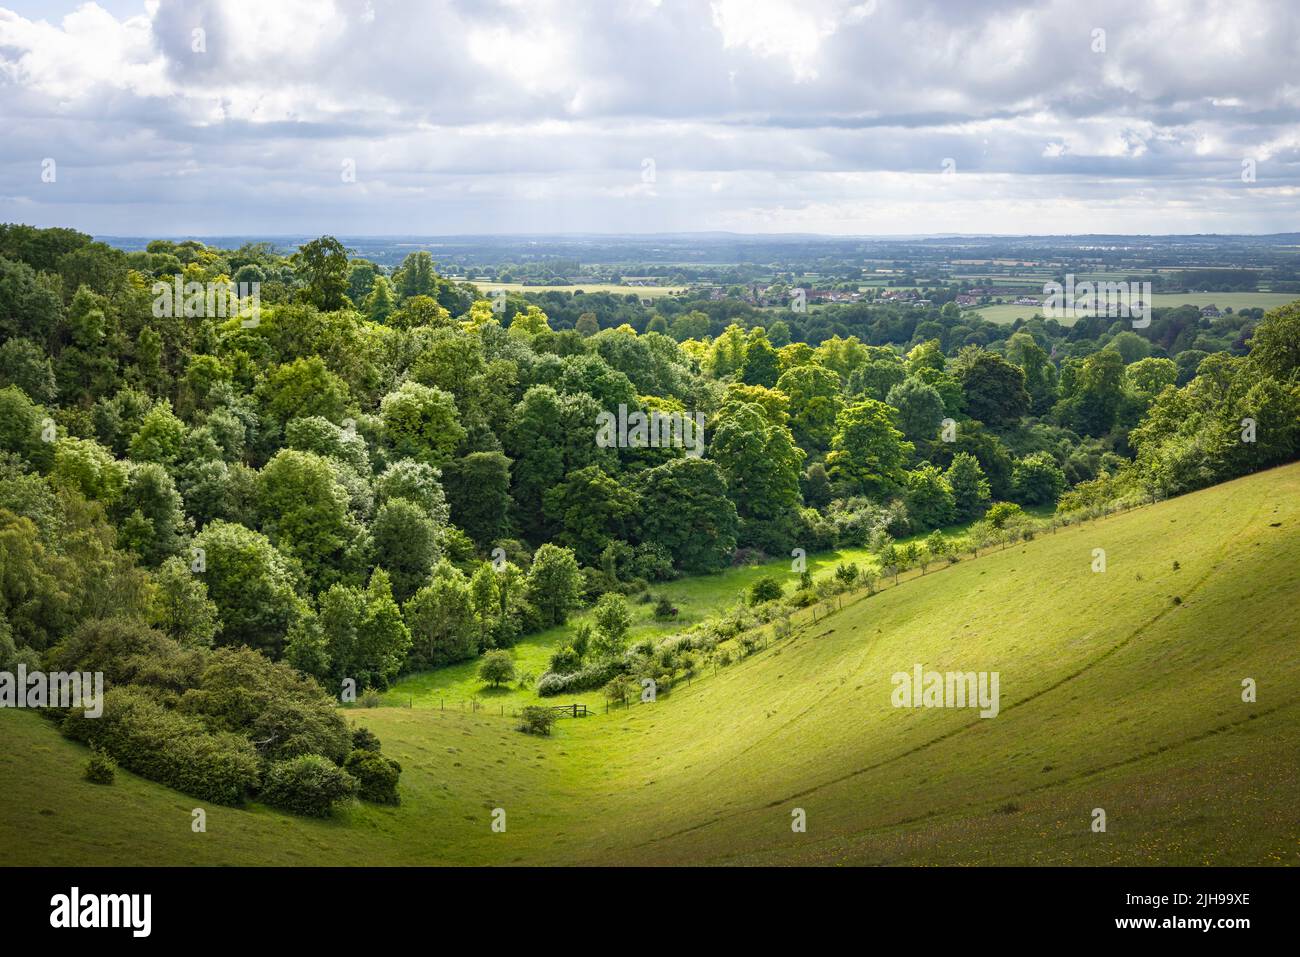 Paysage de campagne du Royaume-Uni. Collines verdoyantes avec arbres et prairie. Vue de Chiltern Hills vers Aylesbury Vale. Buckinghamshire, Royaume-Uni Banque D'Images